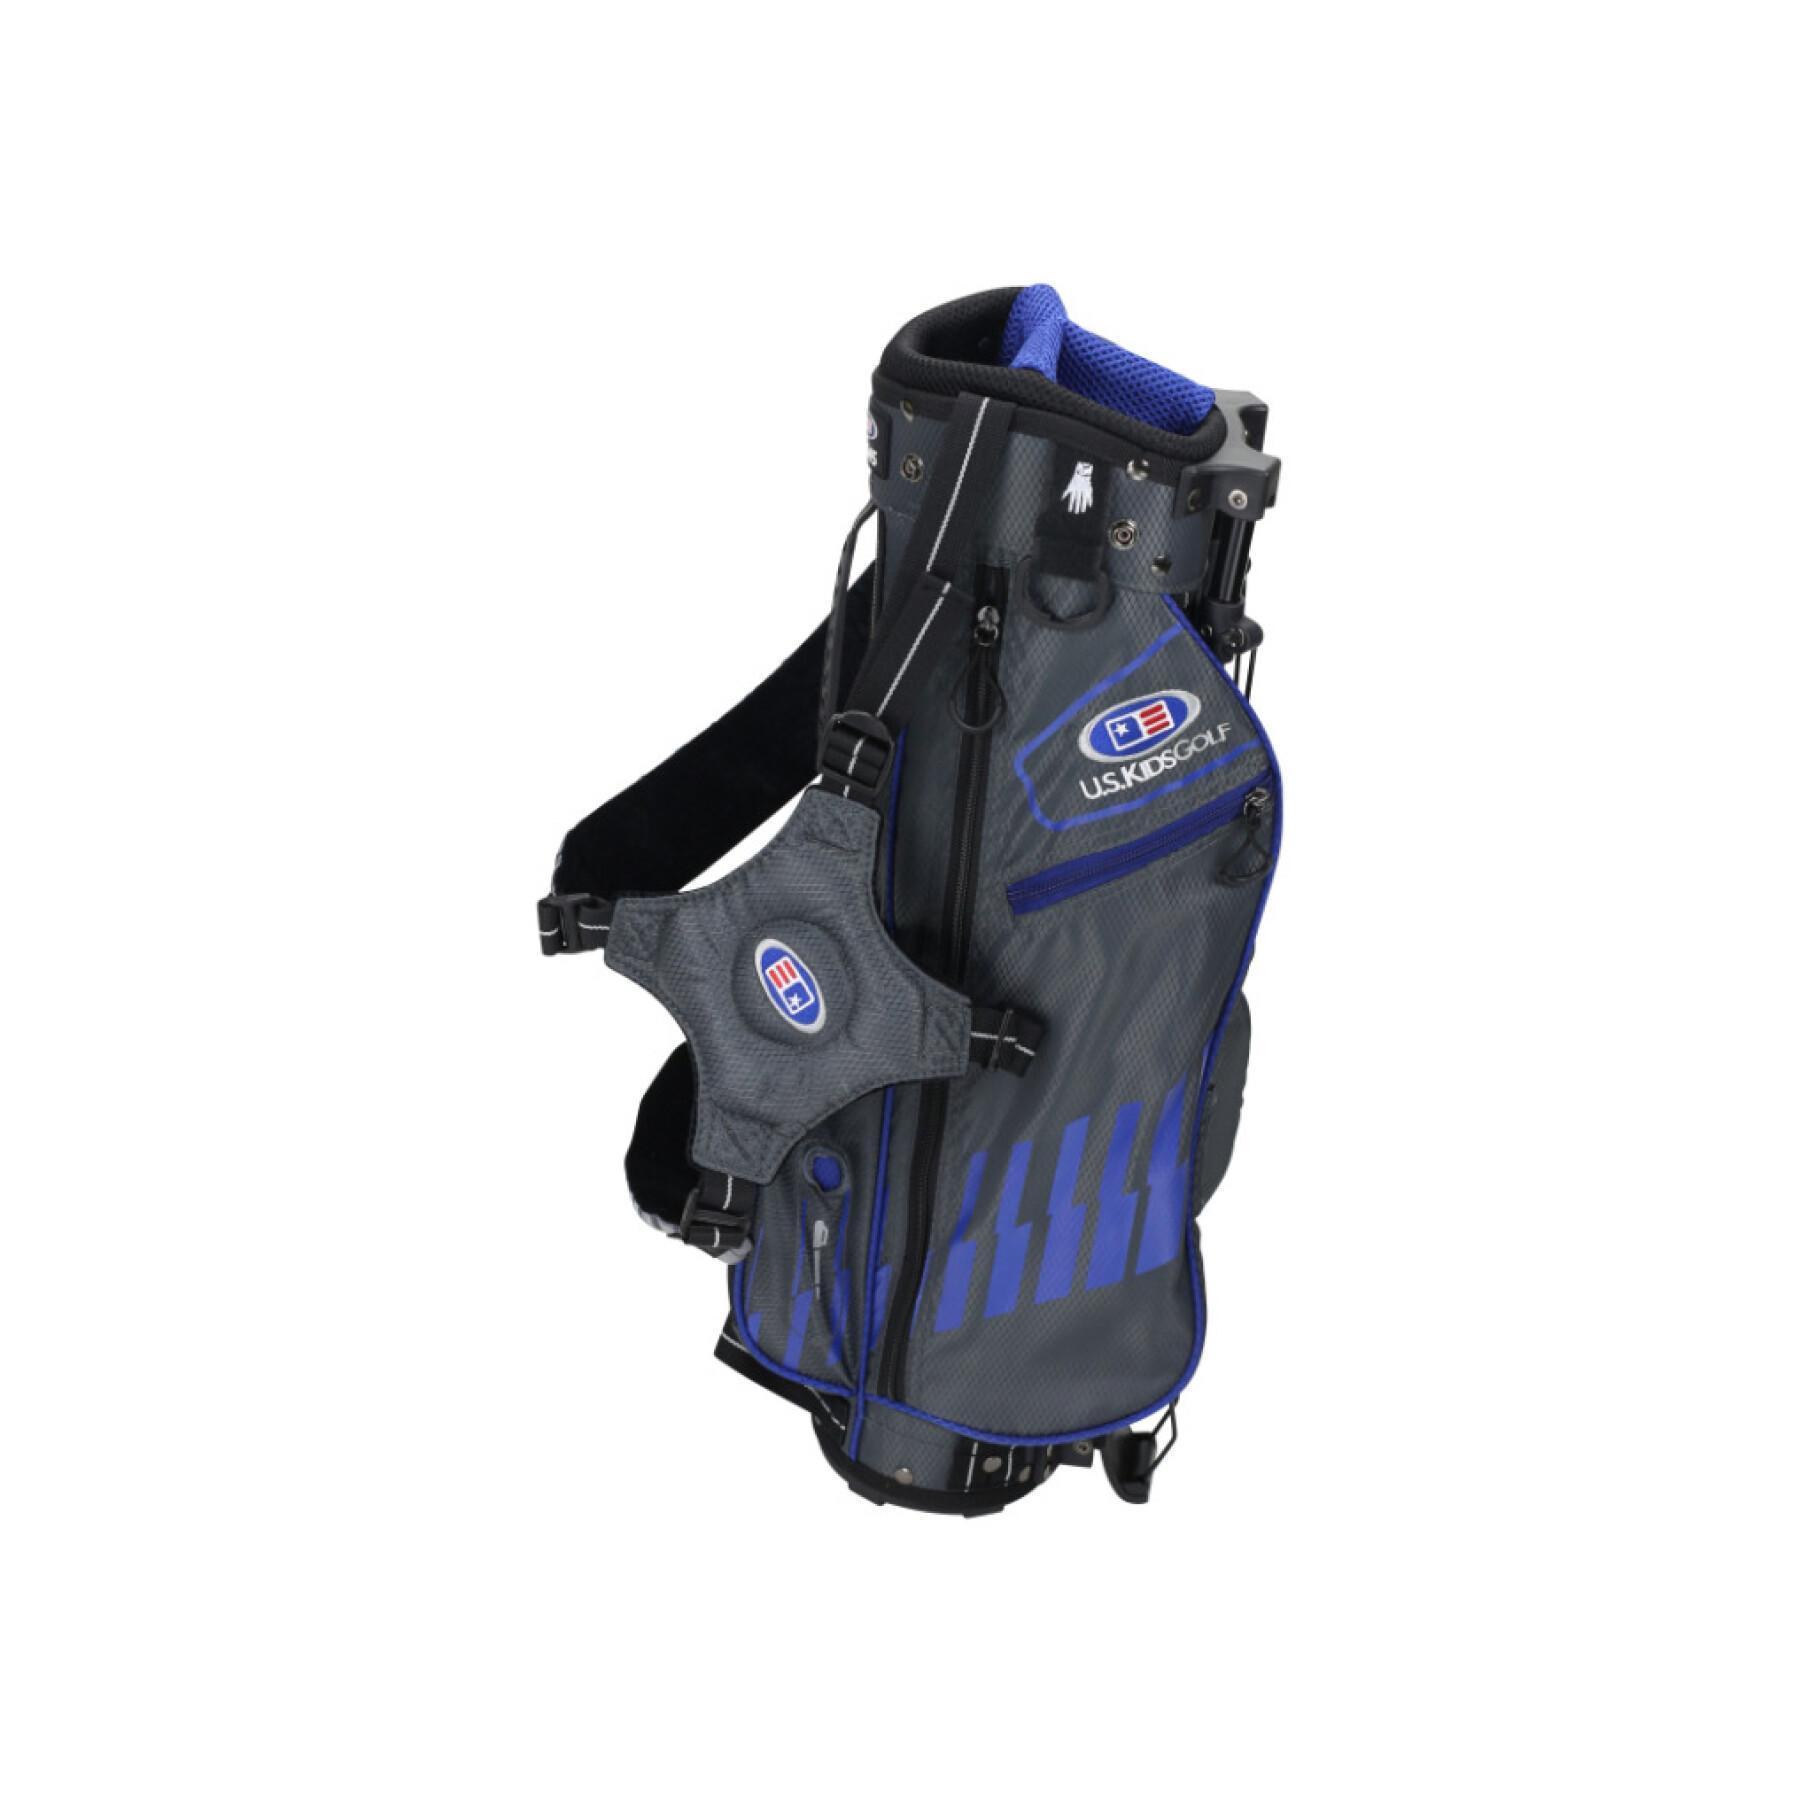 Väska för barn U.S Kids Golf ultralight avec trepied us-45 / 2020